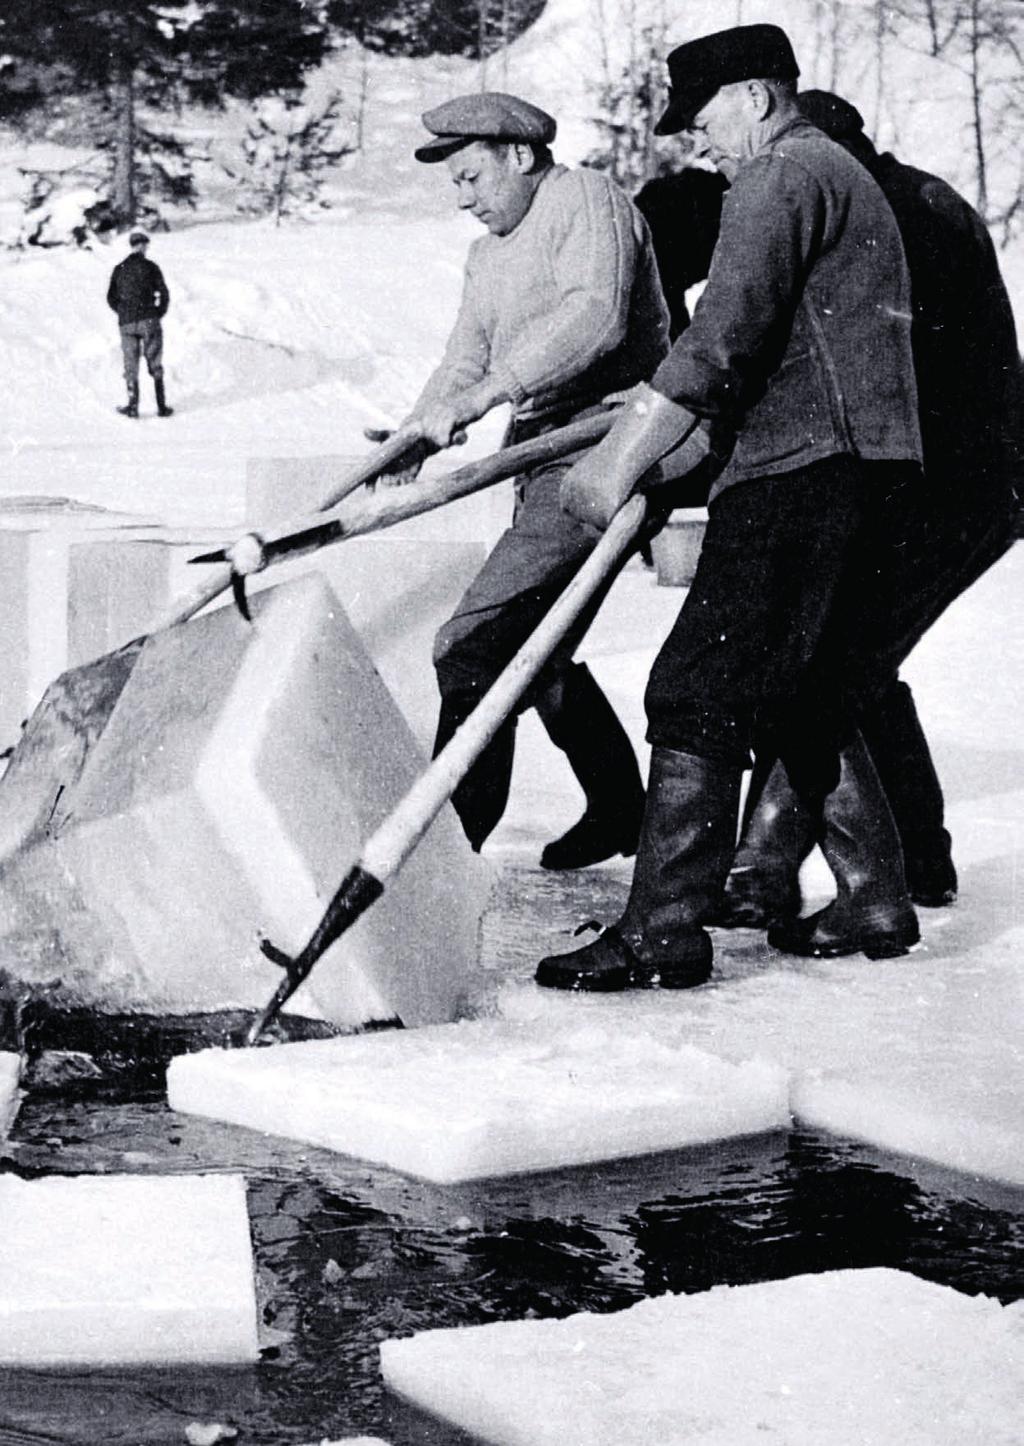 Hurum og Røyken var de kommunene i Buskerud som hadde den mest betydelige isdriften fordi de ligger til både Drammensfjorden